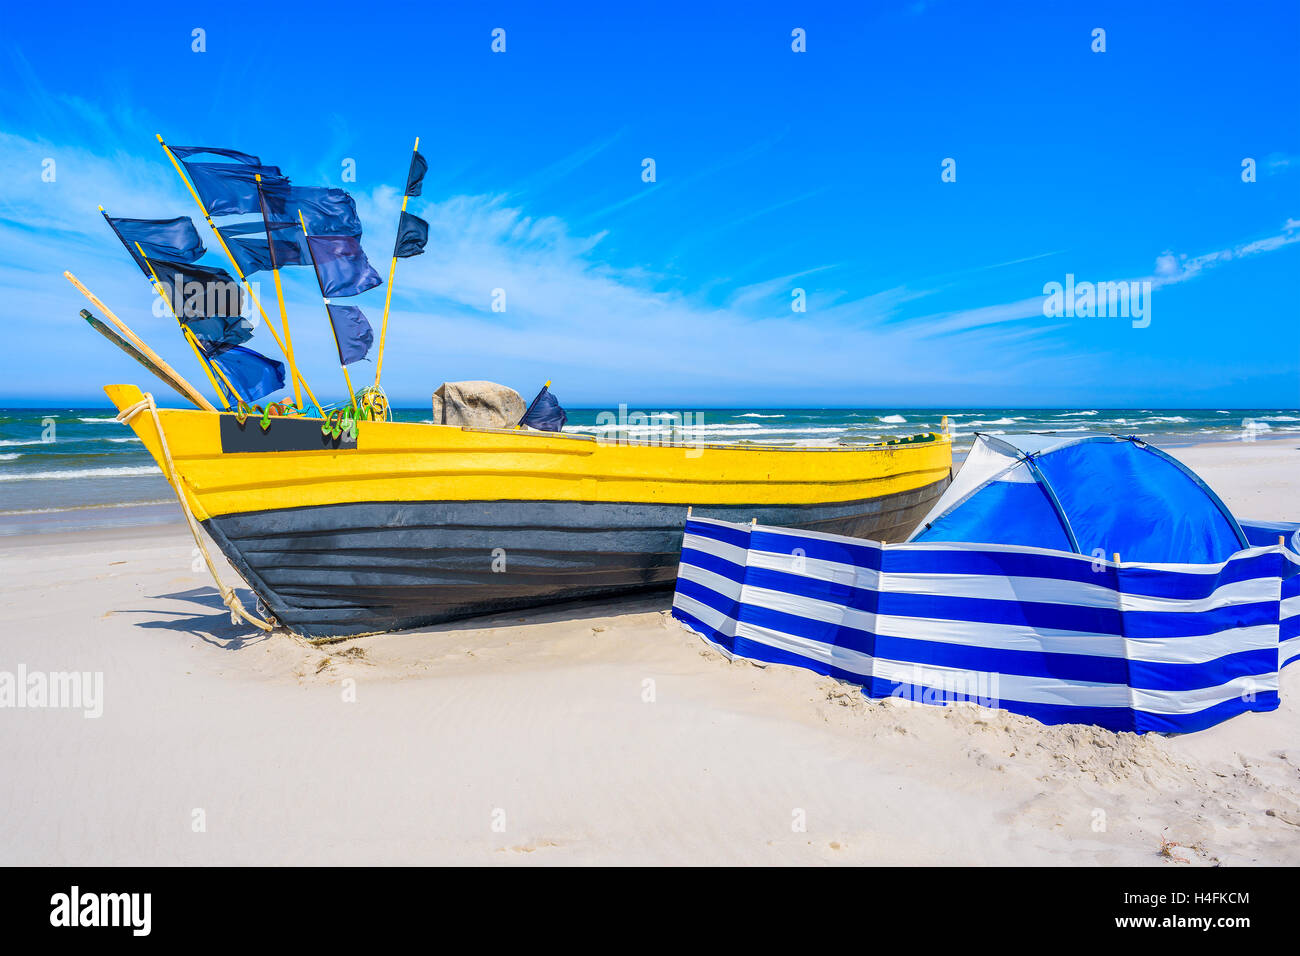 Bateau de pêche colorés et coupe-vent bleu avec tente sur la plage de sable de la mer Baltique, Pologne Banque D'Images